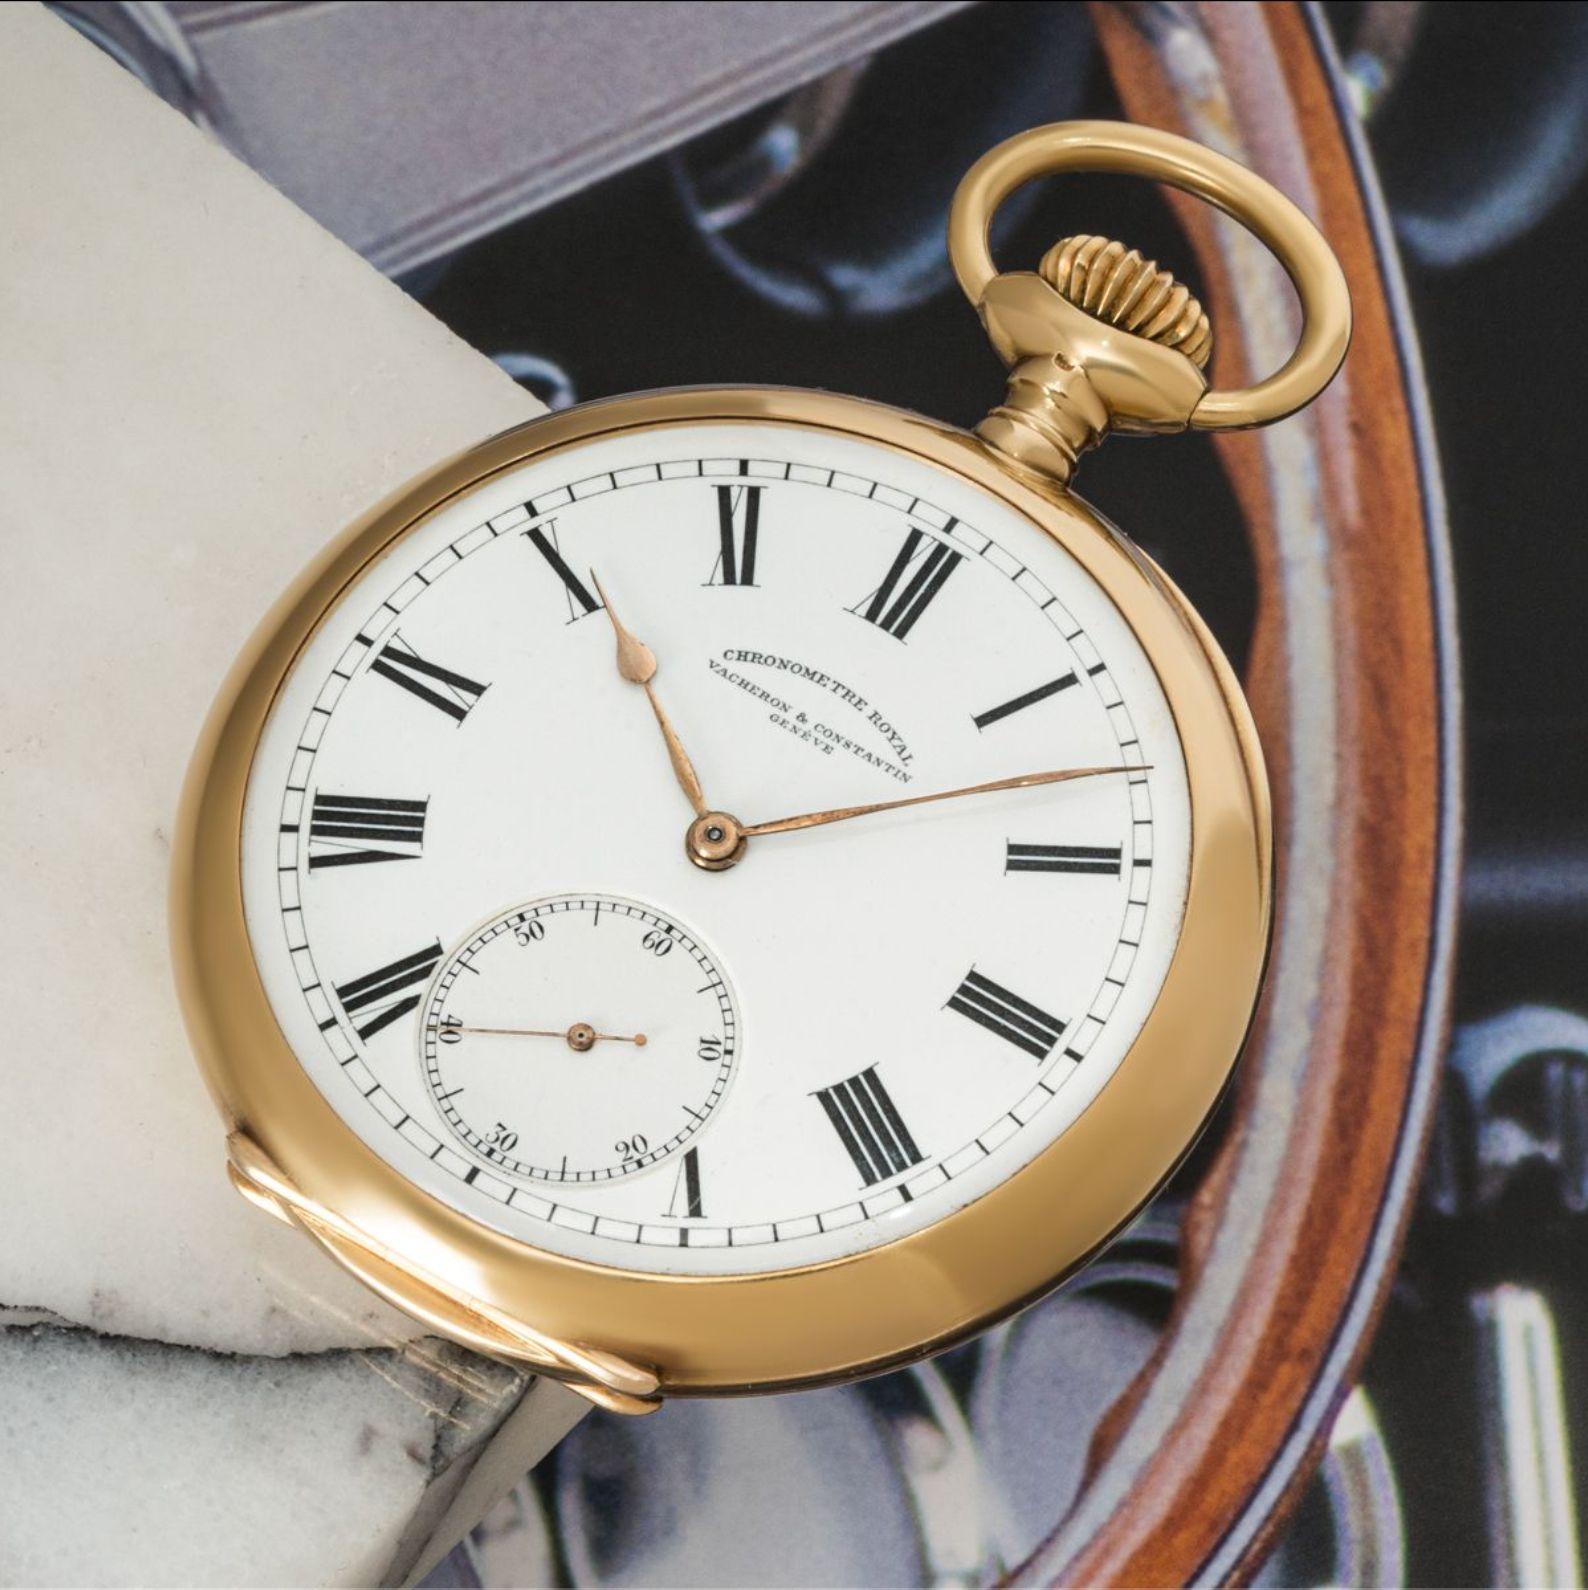 chronometre taschenuhr